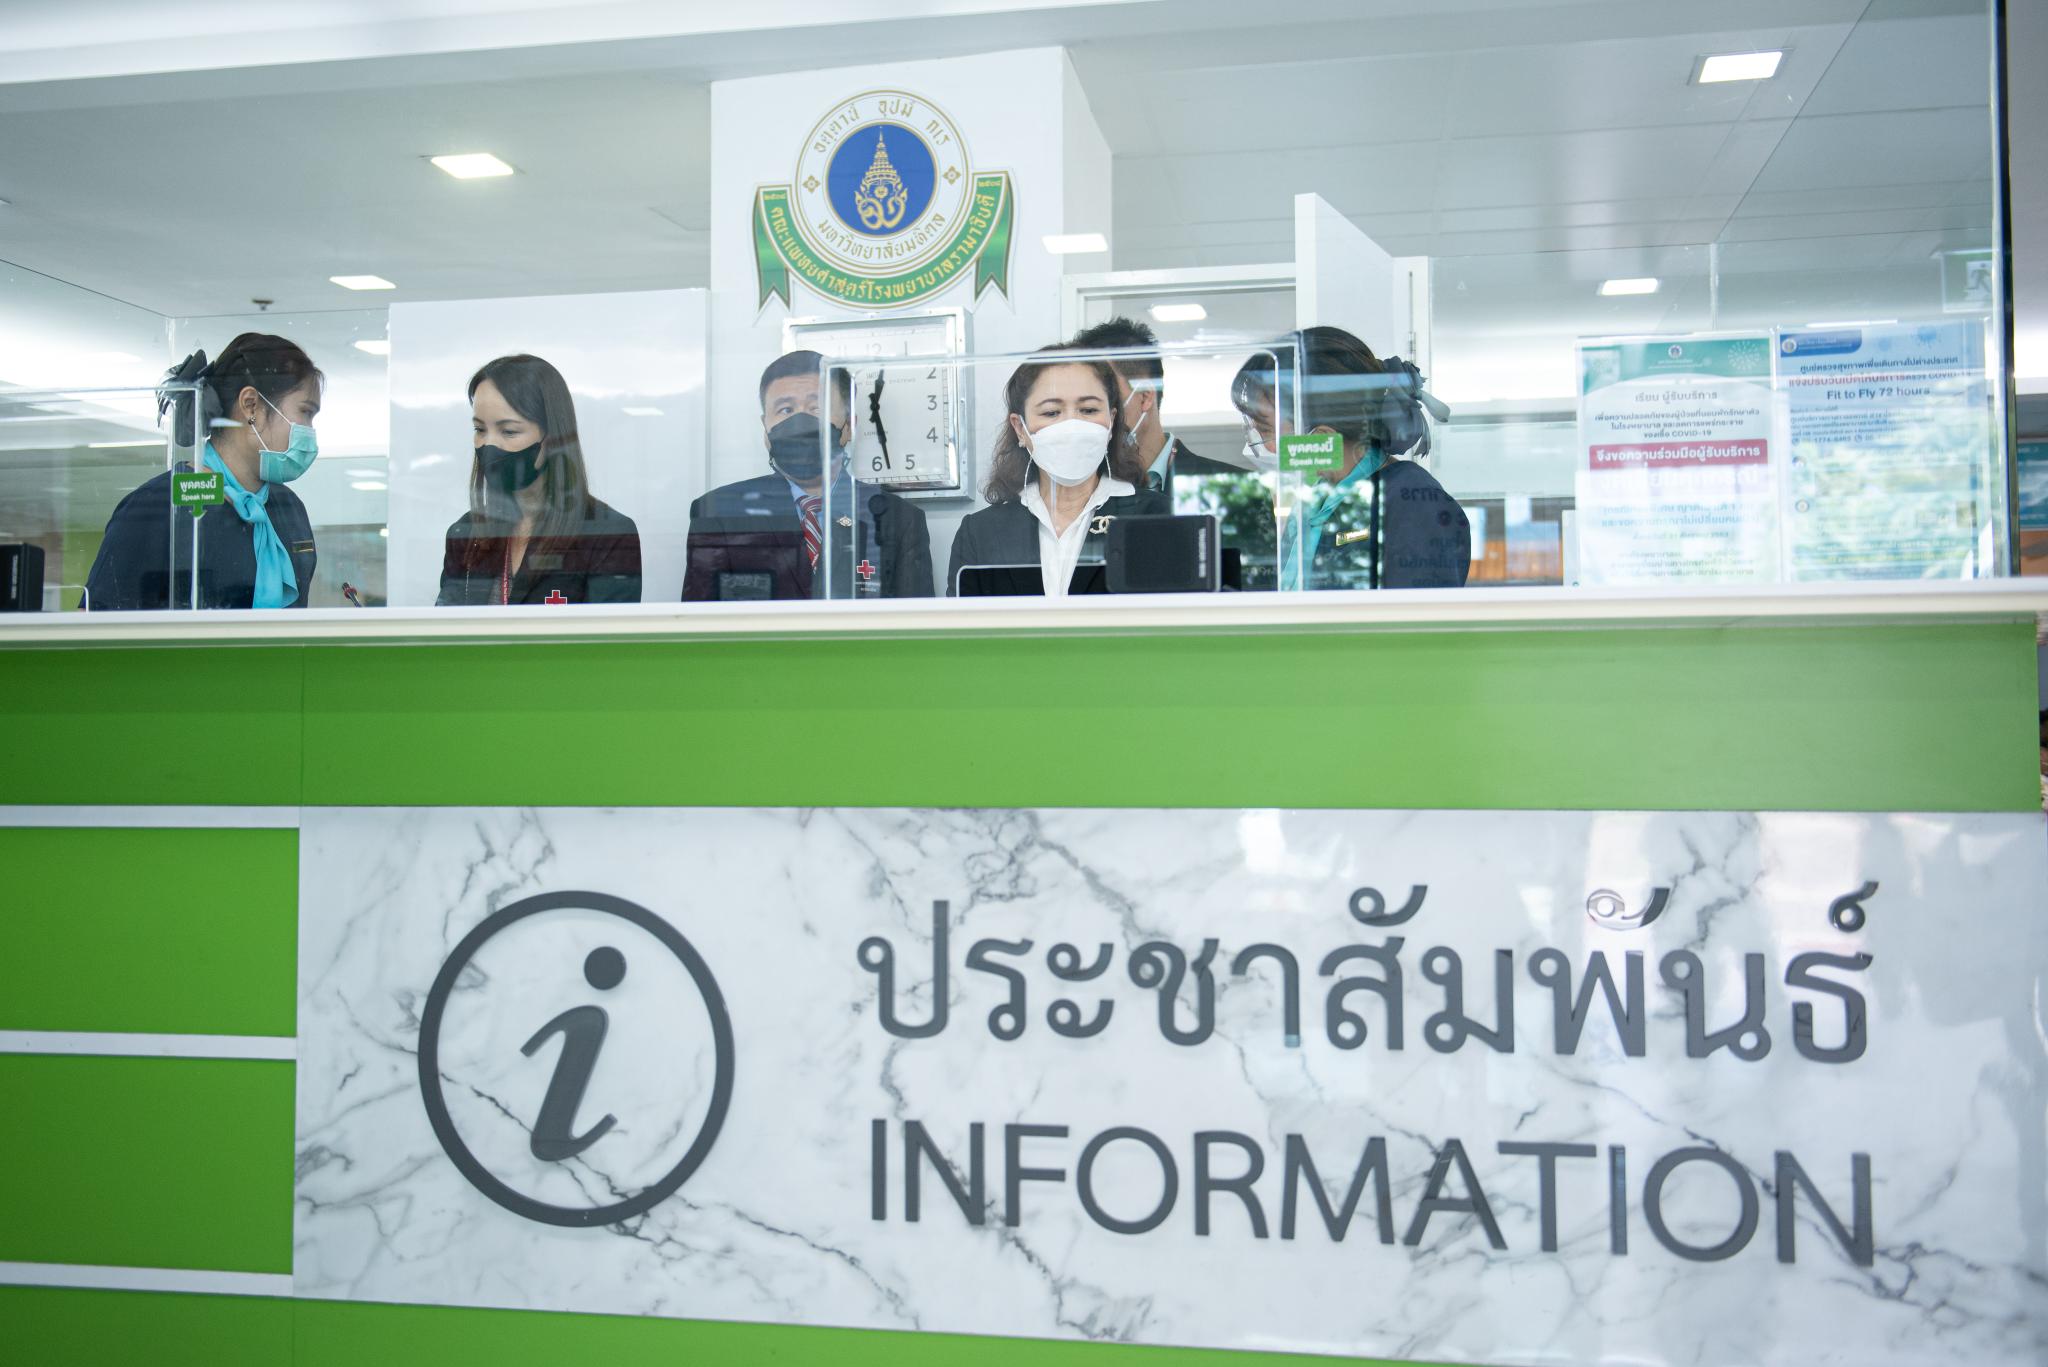 งานสื่อสารองค์กร คณะแพทยศาสตร์โรงพยาบาลรามาธิบดี มหาวิทยาลัยมหิดล ต้อนรับทีมศึกษาดูงานจาก สำนักสารนิเทศและสื่อสารองค์กร กลุ่มงานกลยุทธ์องค์กร สภากาชาดไทย และฝ่ายสื่อสารองค์กร โรงพยาบาลจุฬาลงกรณ์ สภากาชาดไทย ศึกษาดูงานด้าน Call Center และหน่วยติดต่อสอบถาม